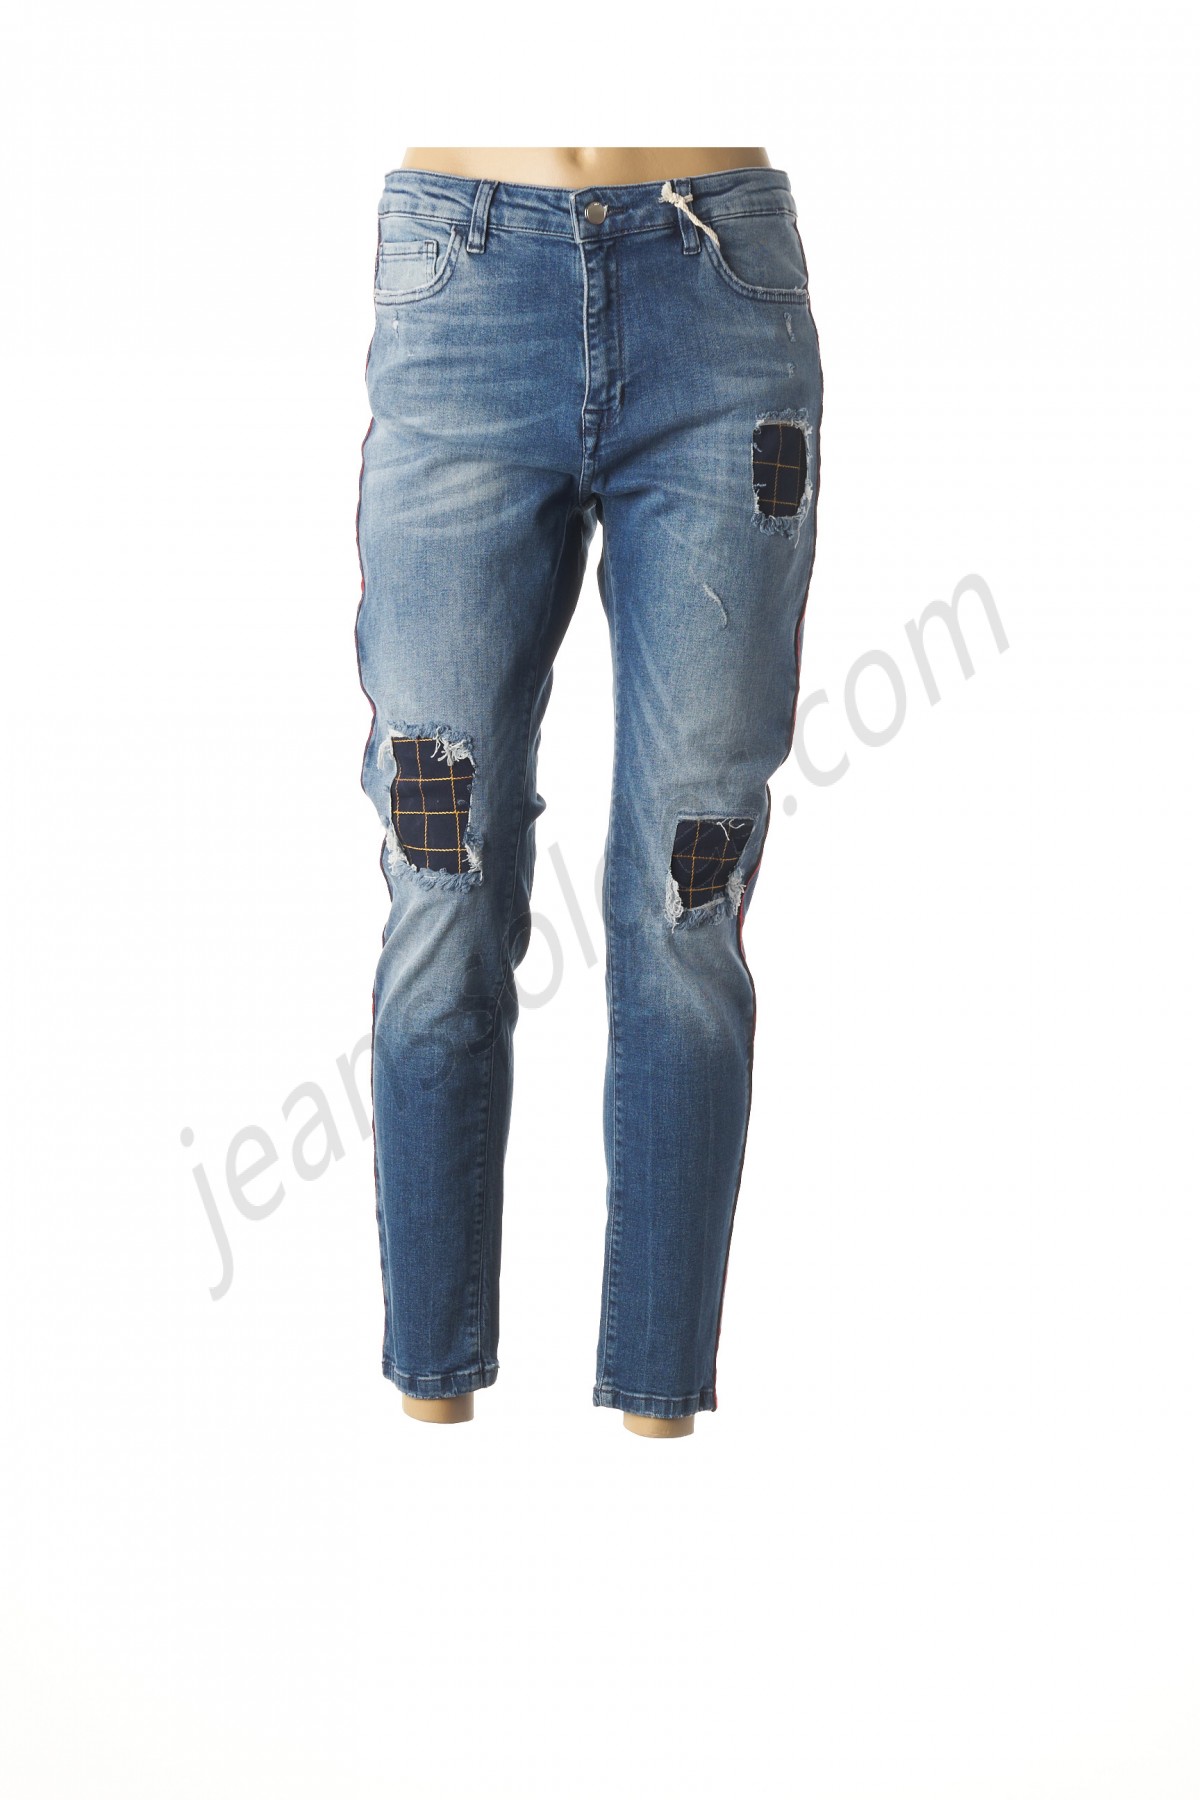 smash wear-Jeans coupe slim prix d’amis - -0